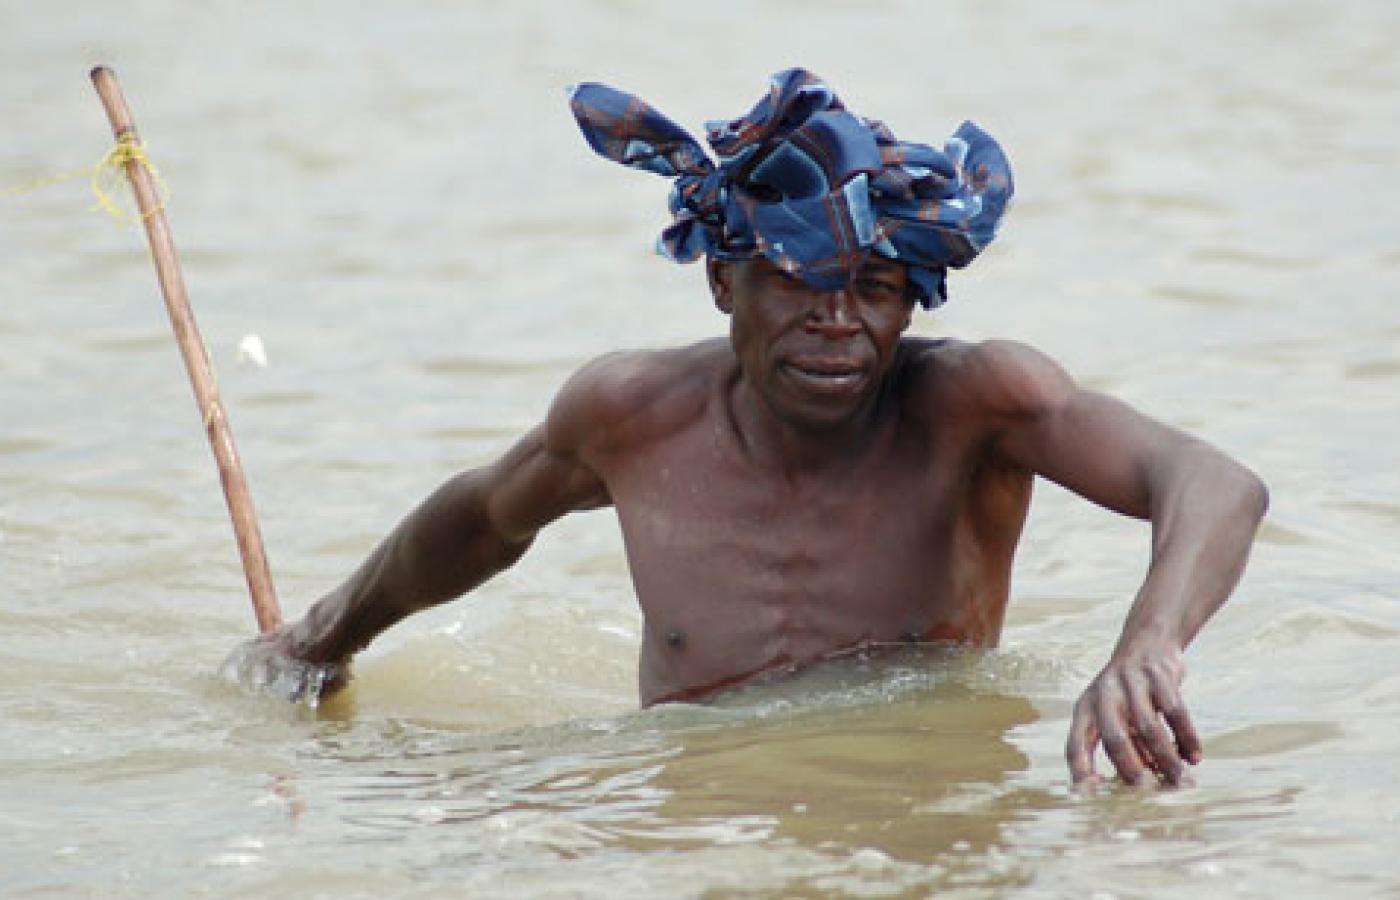 Dotychczas przybrzeżne wody Kenii dawały 200 tys. ton połowu rocznie. Teraz lokalni rybacy mają ledwie co włożyć do garnka. Fot. Joachim Huber, Flickr, CC by SA